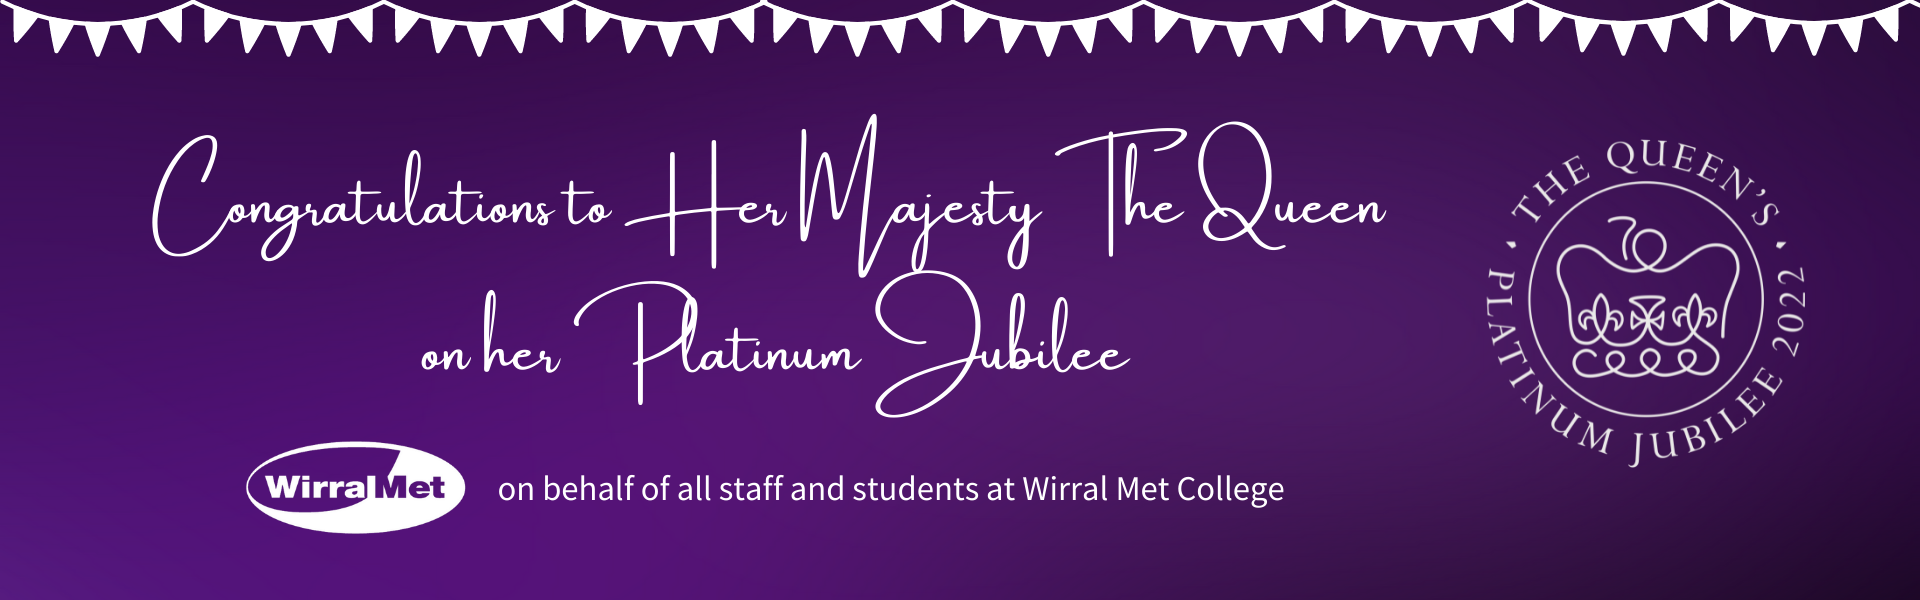 the Queen's platinum jubilee website banner